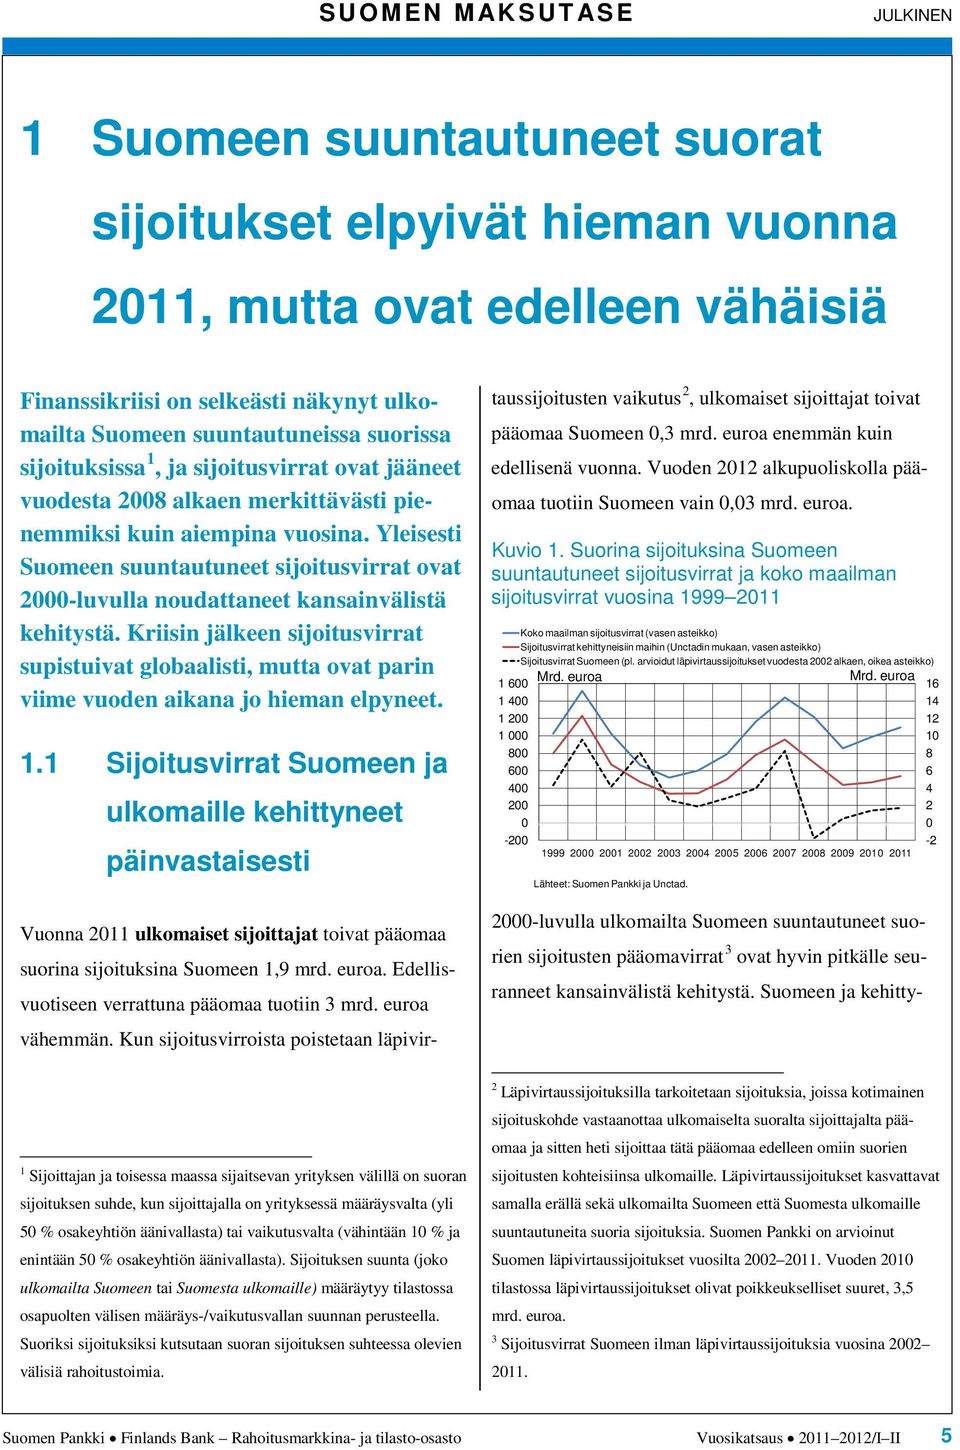 Yleisesti Suomeen suuntautuneet sijoitusvirrat ovat -luvulla noudattaneet kansainvälistä kehitystä.